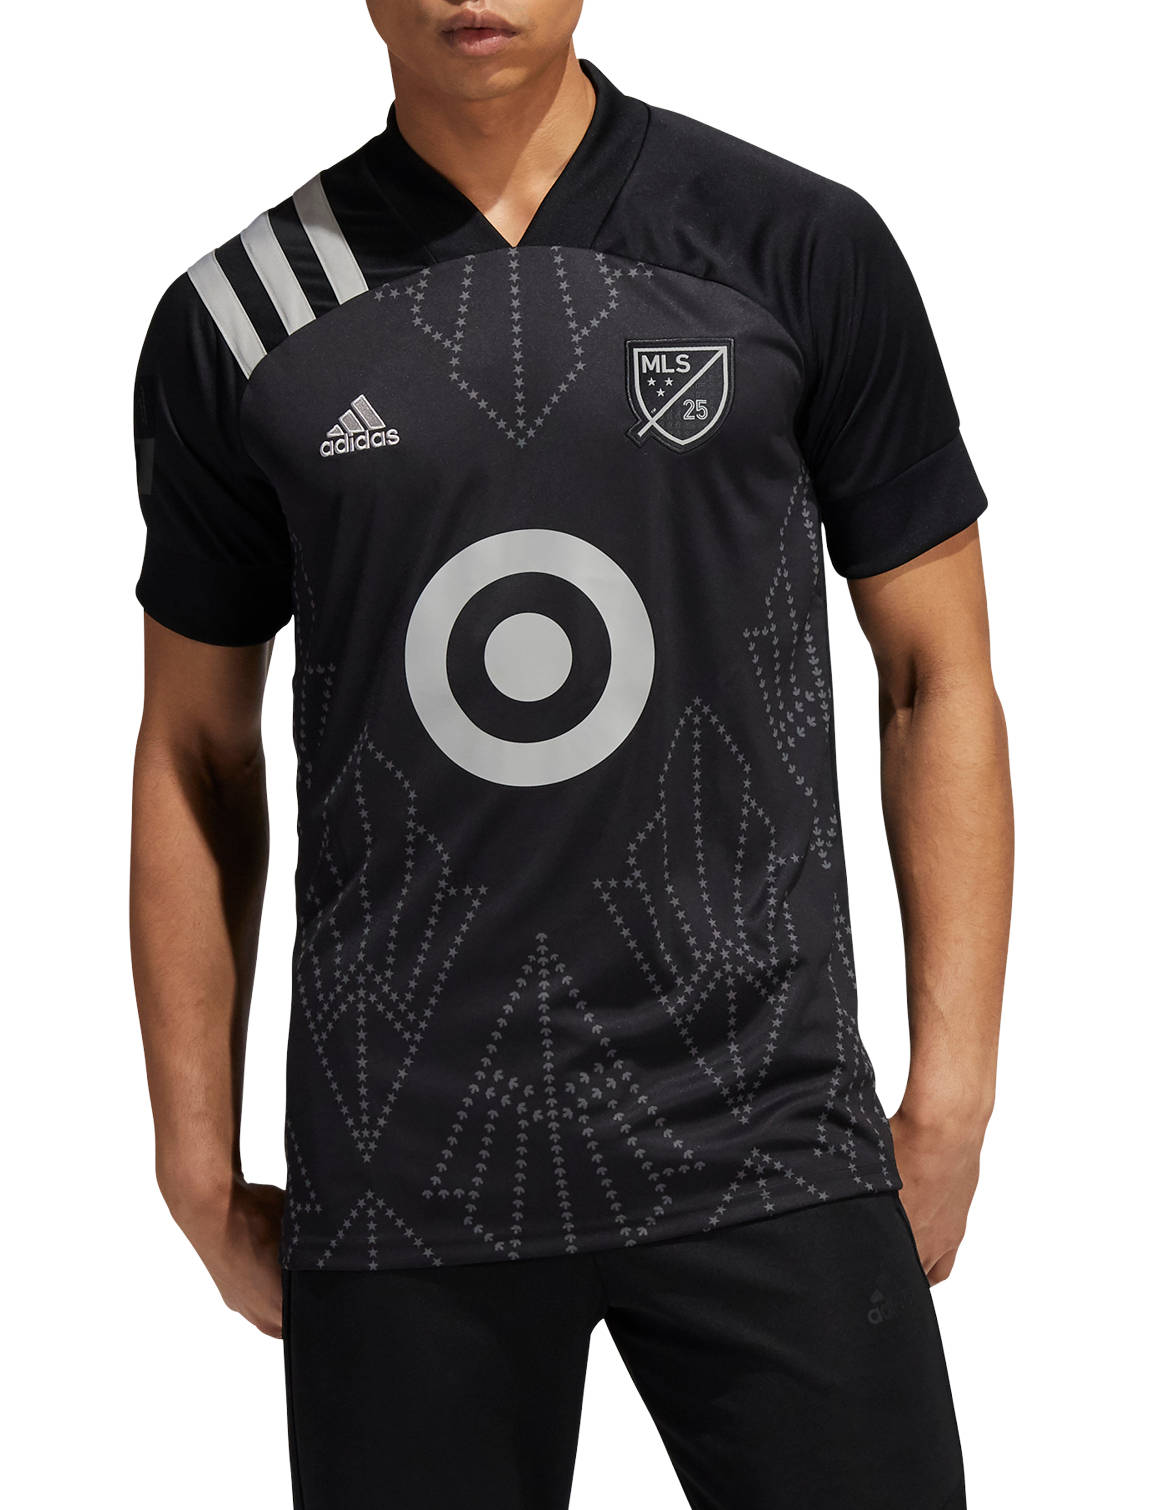 Bluza adidas MLS AS REP JSY 2020/21